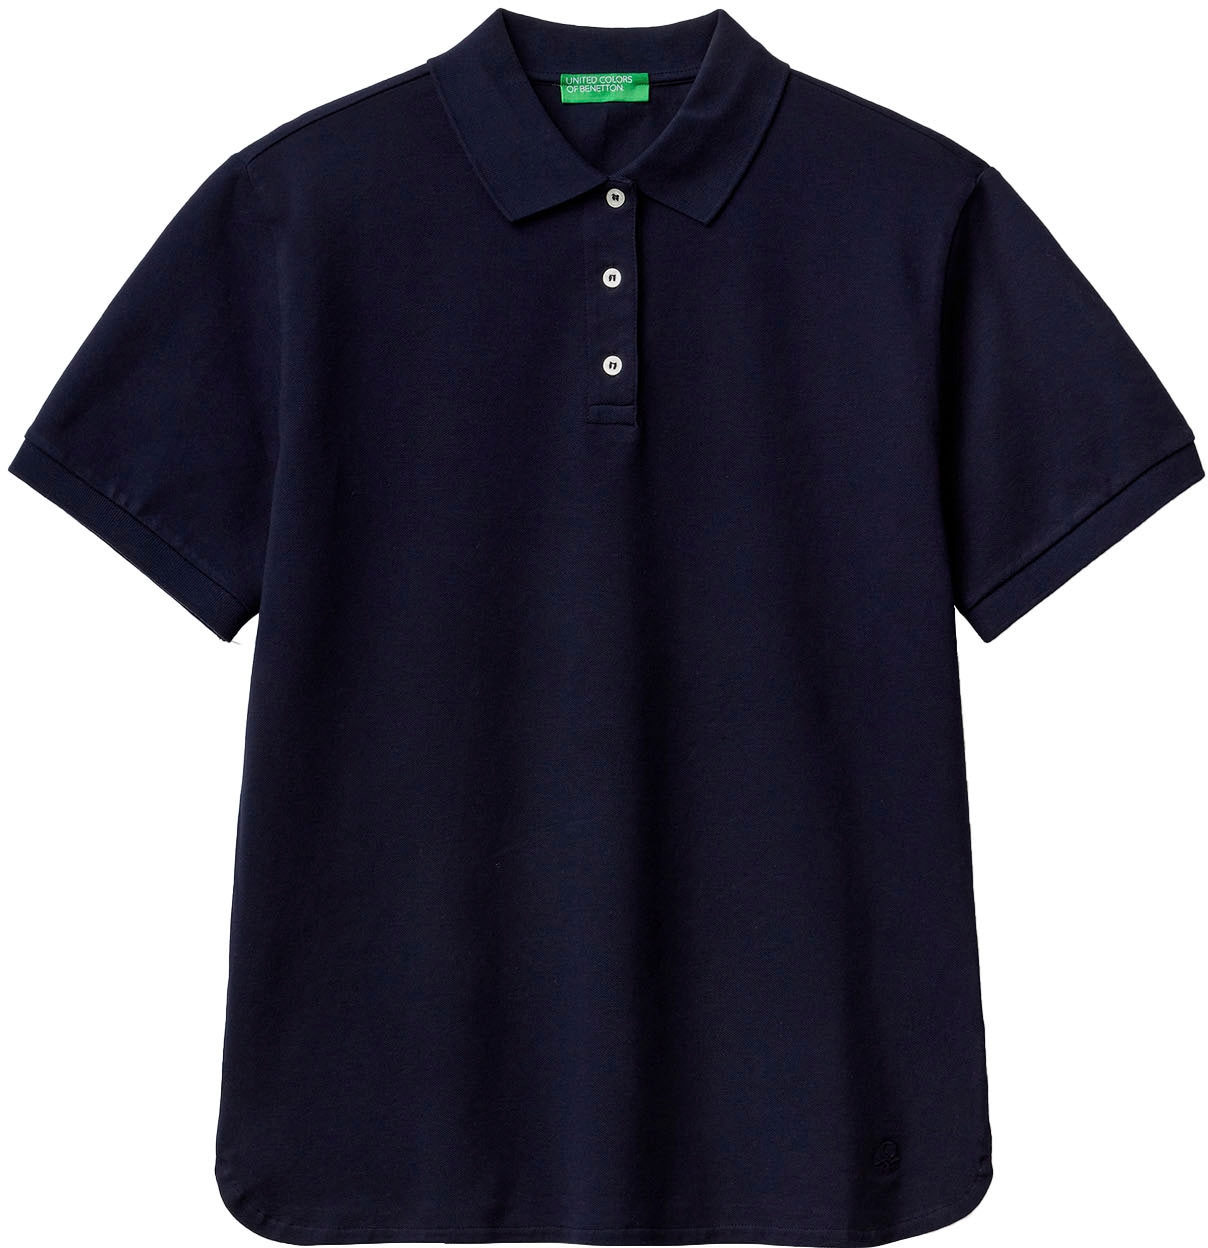 versandkostenfrei bestellen mit Benetton ♕ perlmuttfarbenen Poloshirt, United of Colors Knöpfen